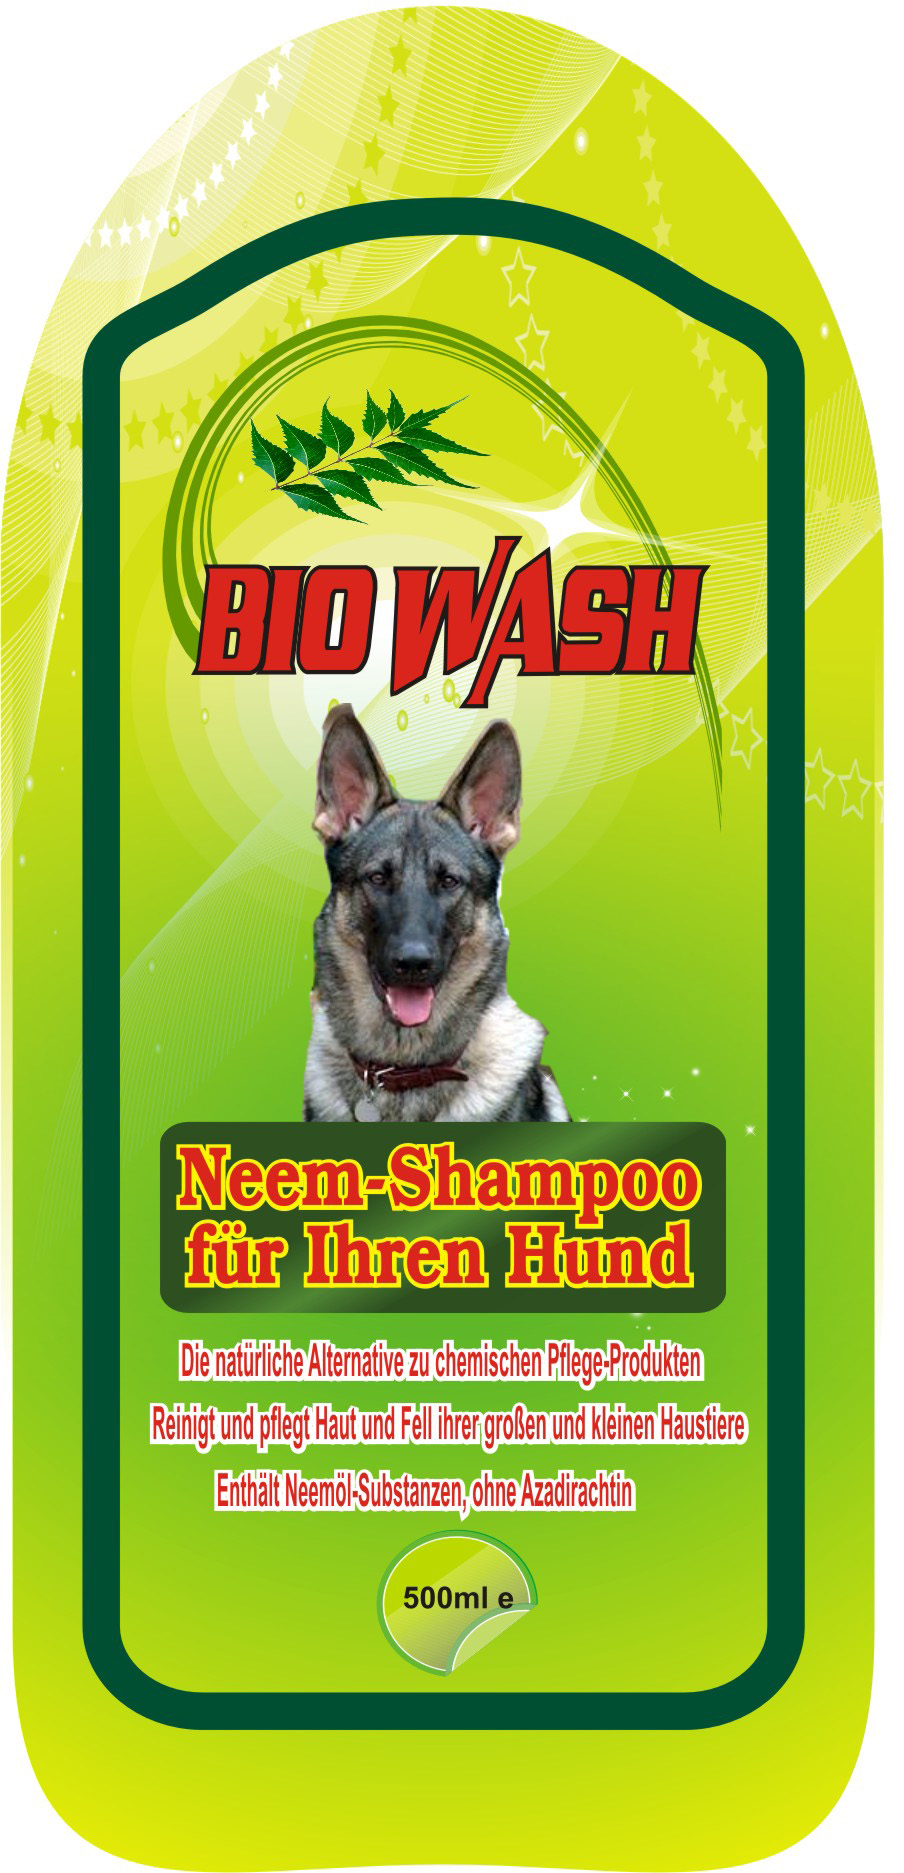 Ashok-bio wash dog shampoo german, page 1-6-12-2011